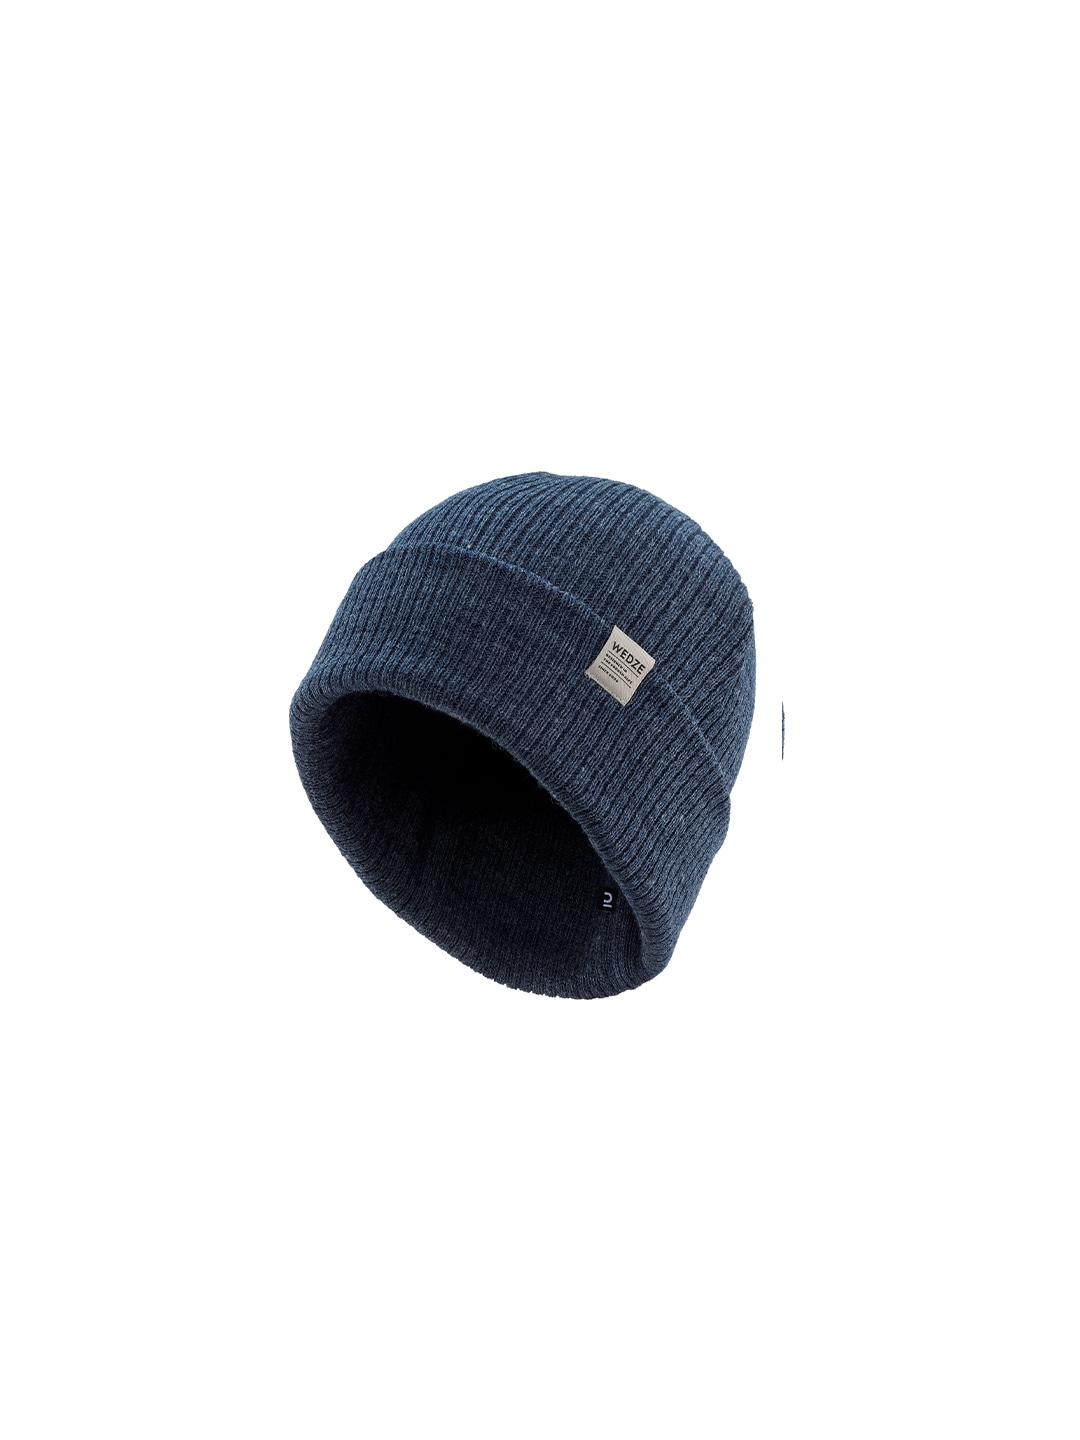 Accessories Caps | WEDZE By Decathlon Unisex Blue Fisherman Ski Hat Beanie - NP92757